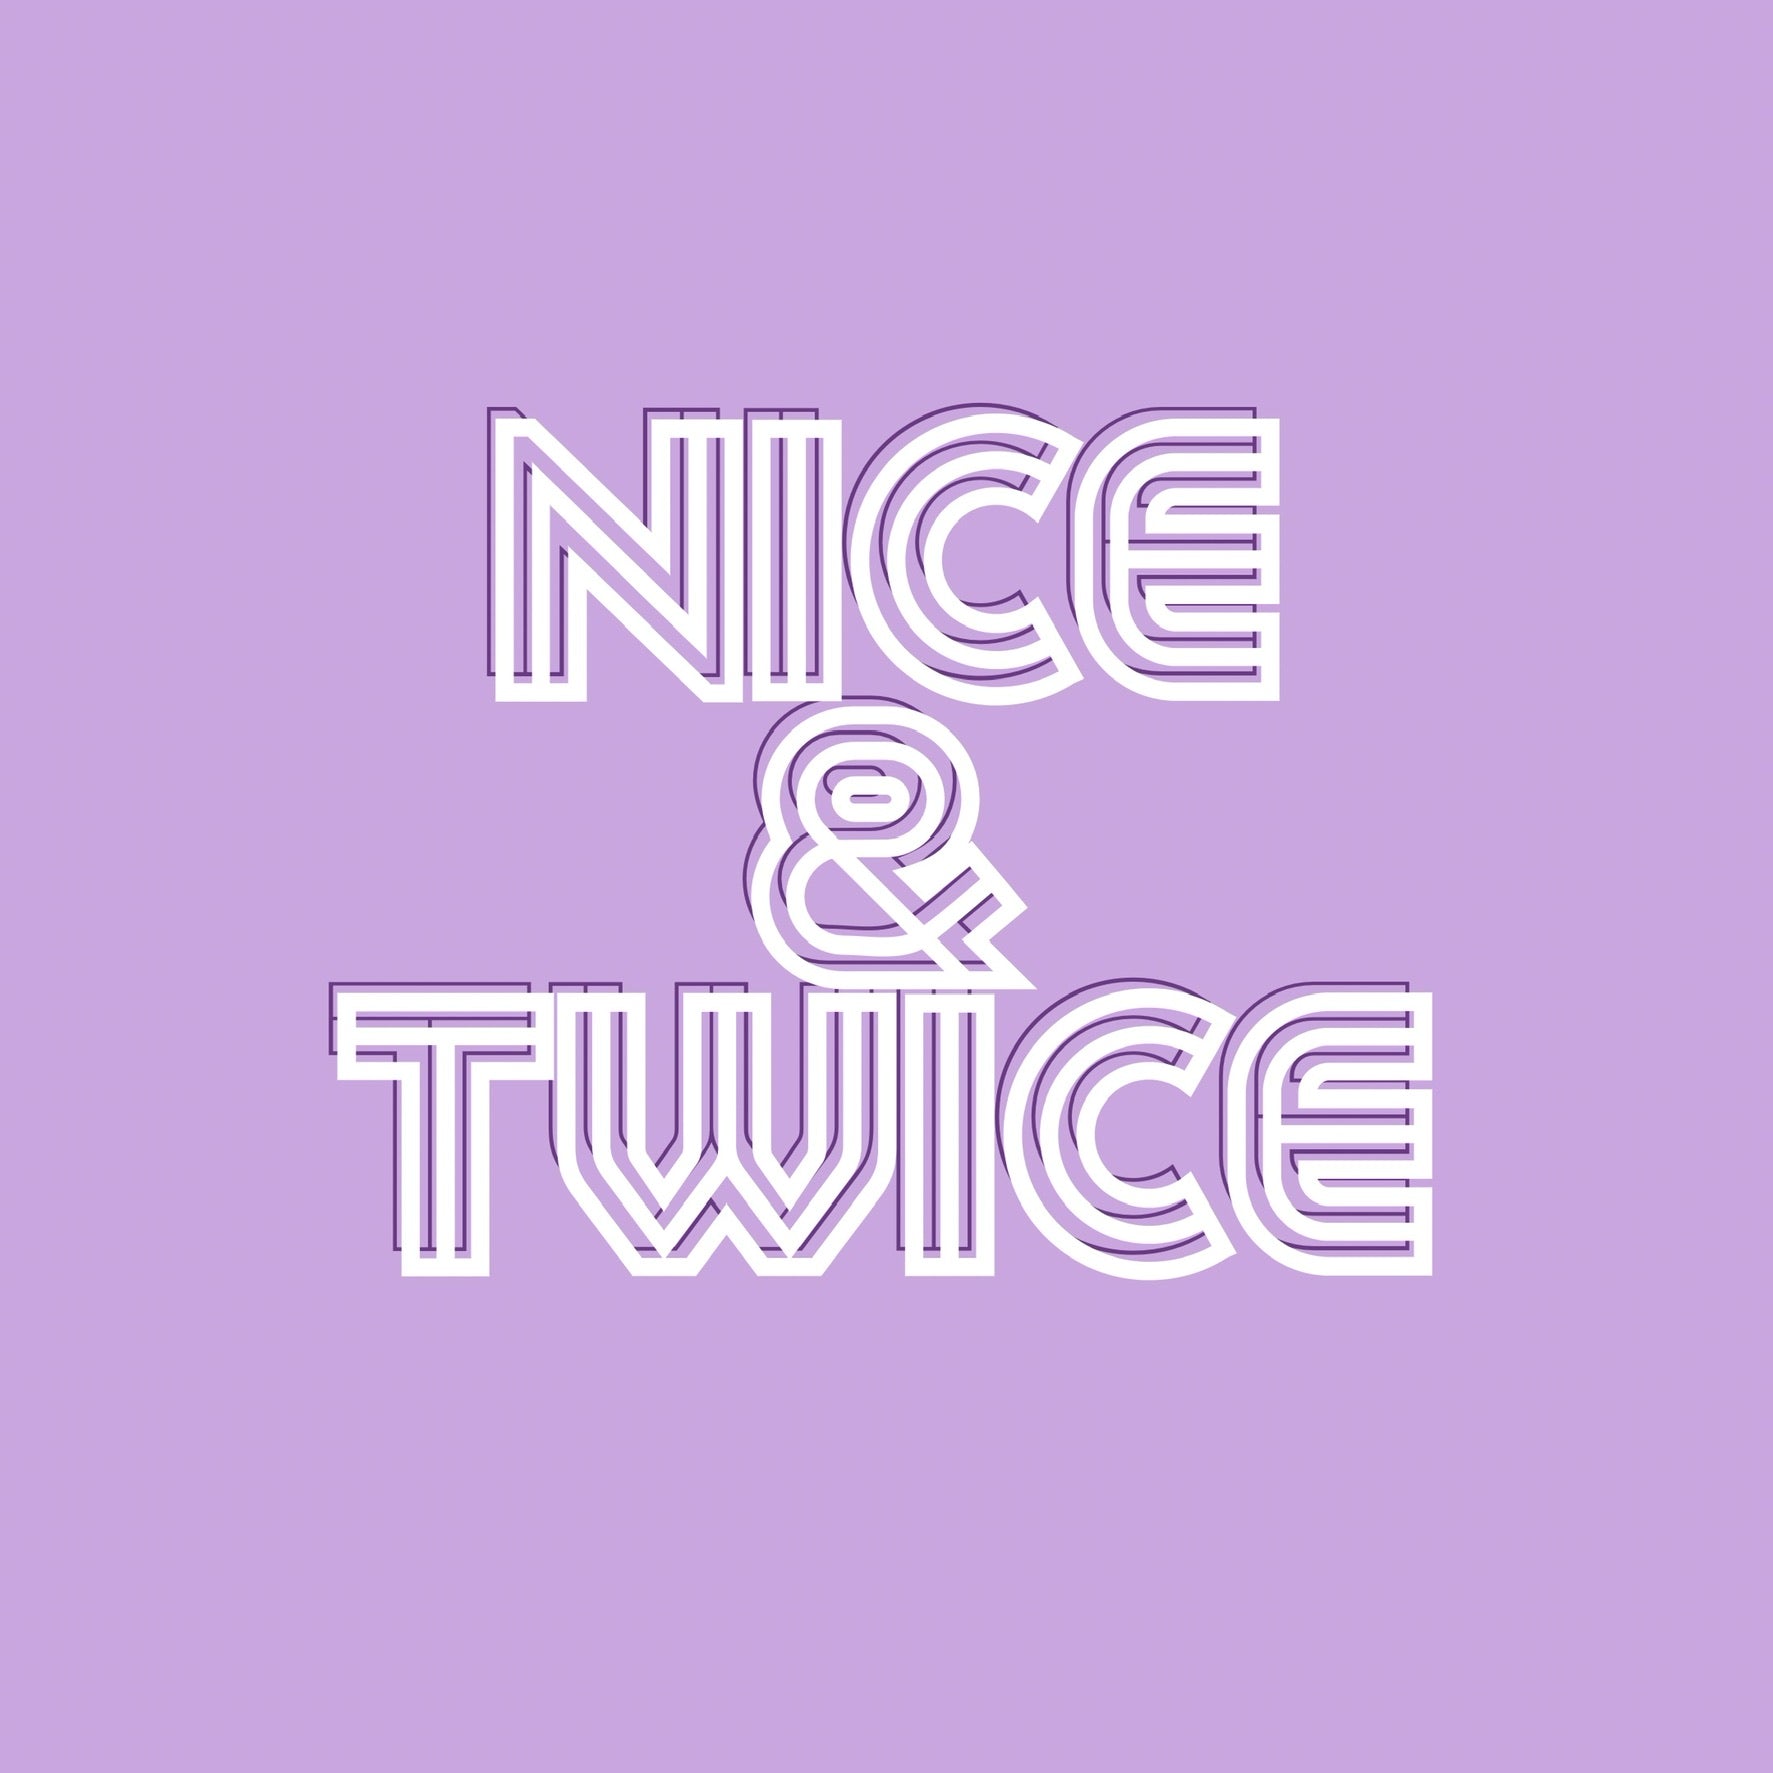 Nice and Twice Shop